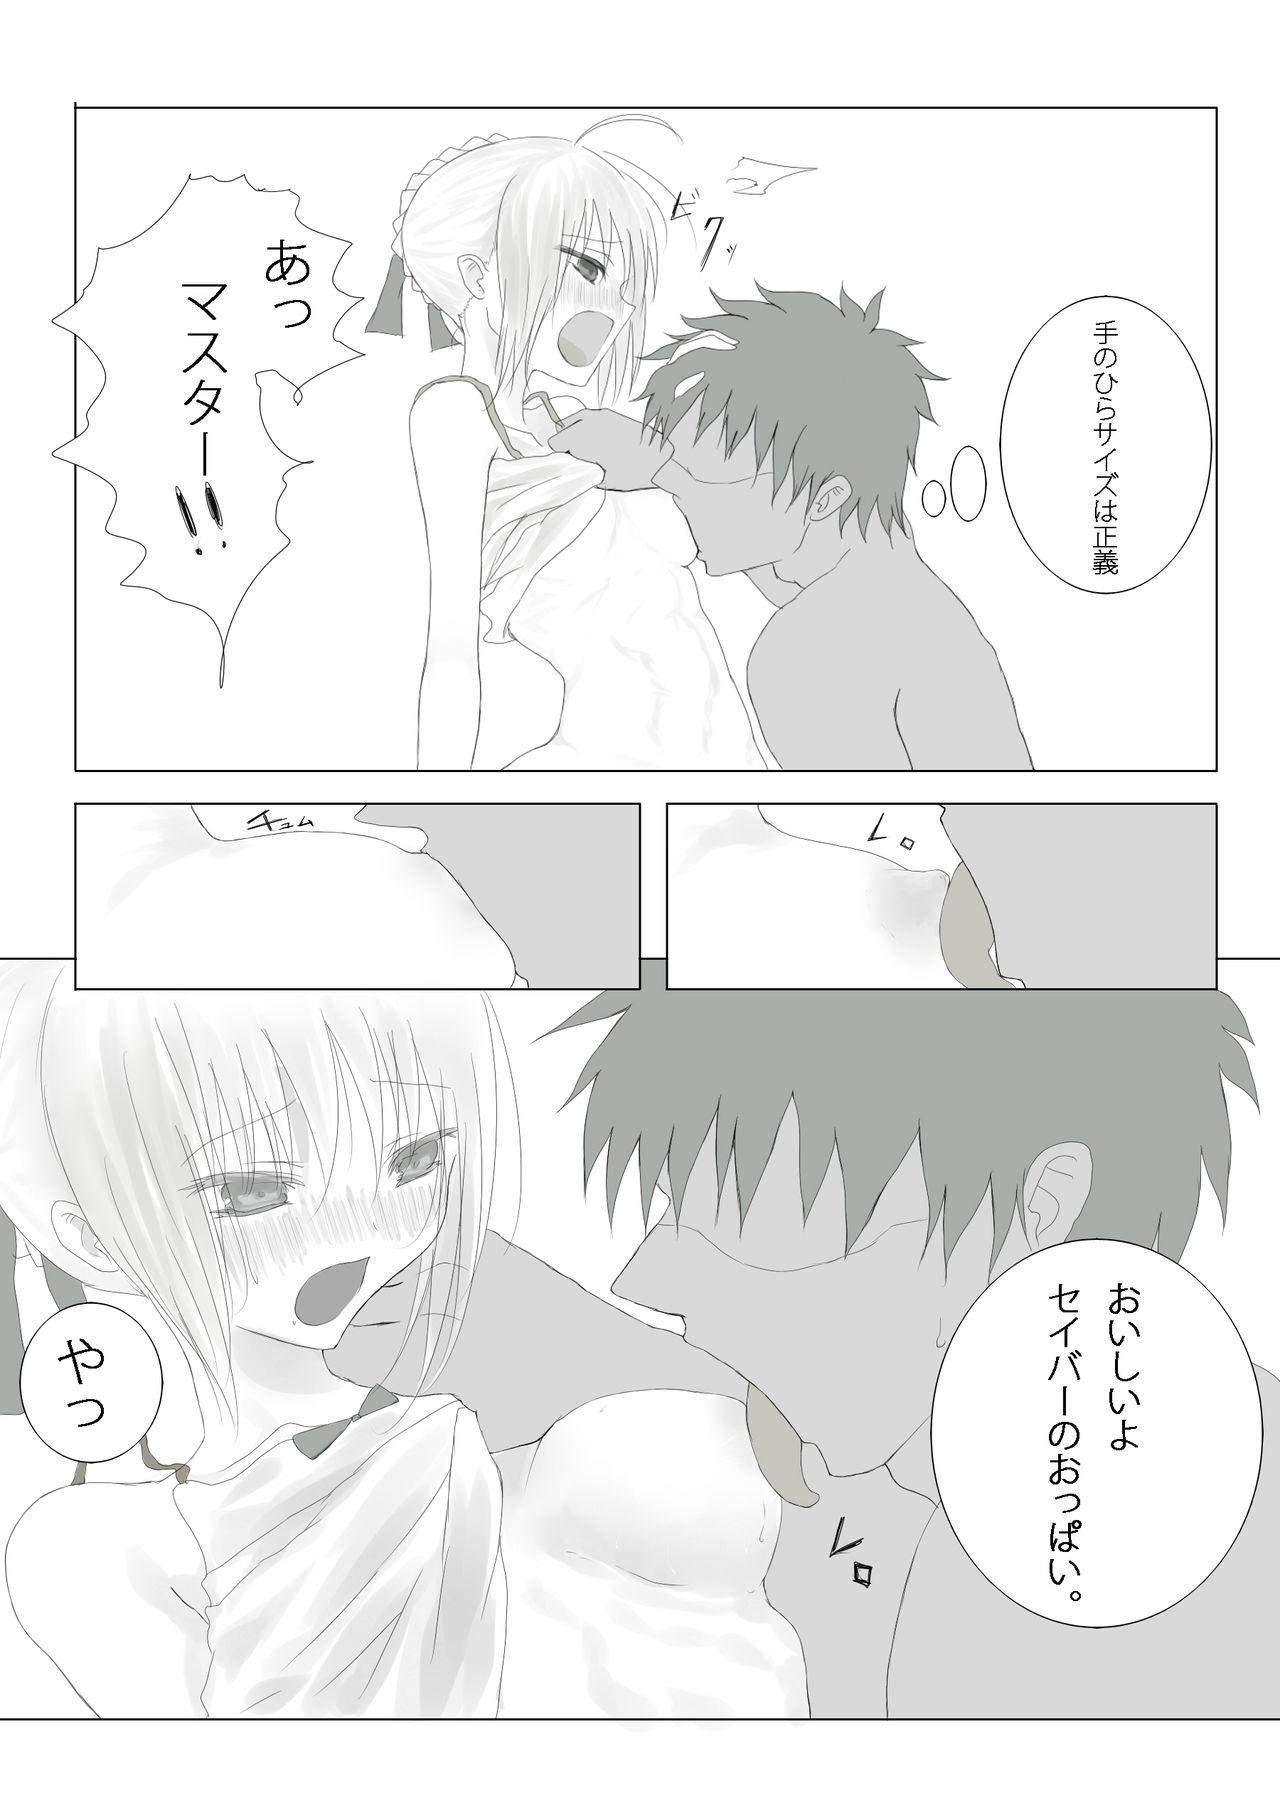 Kissing Emiya-sanchi no Tsukaima - Fate stay night Chastity - Page 5